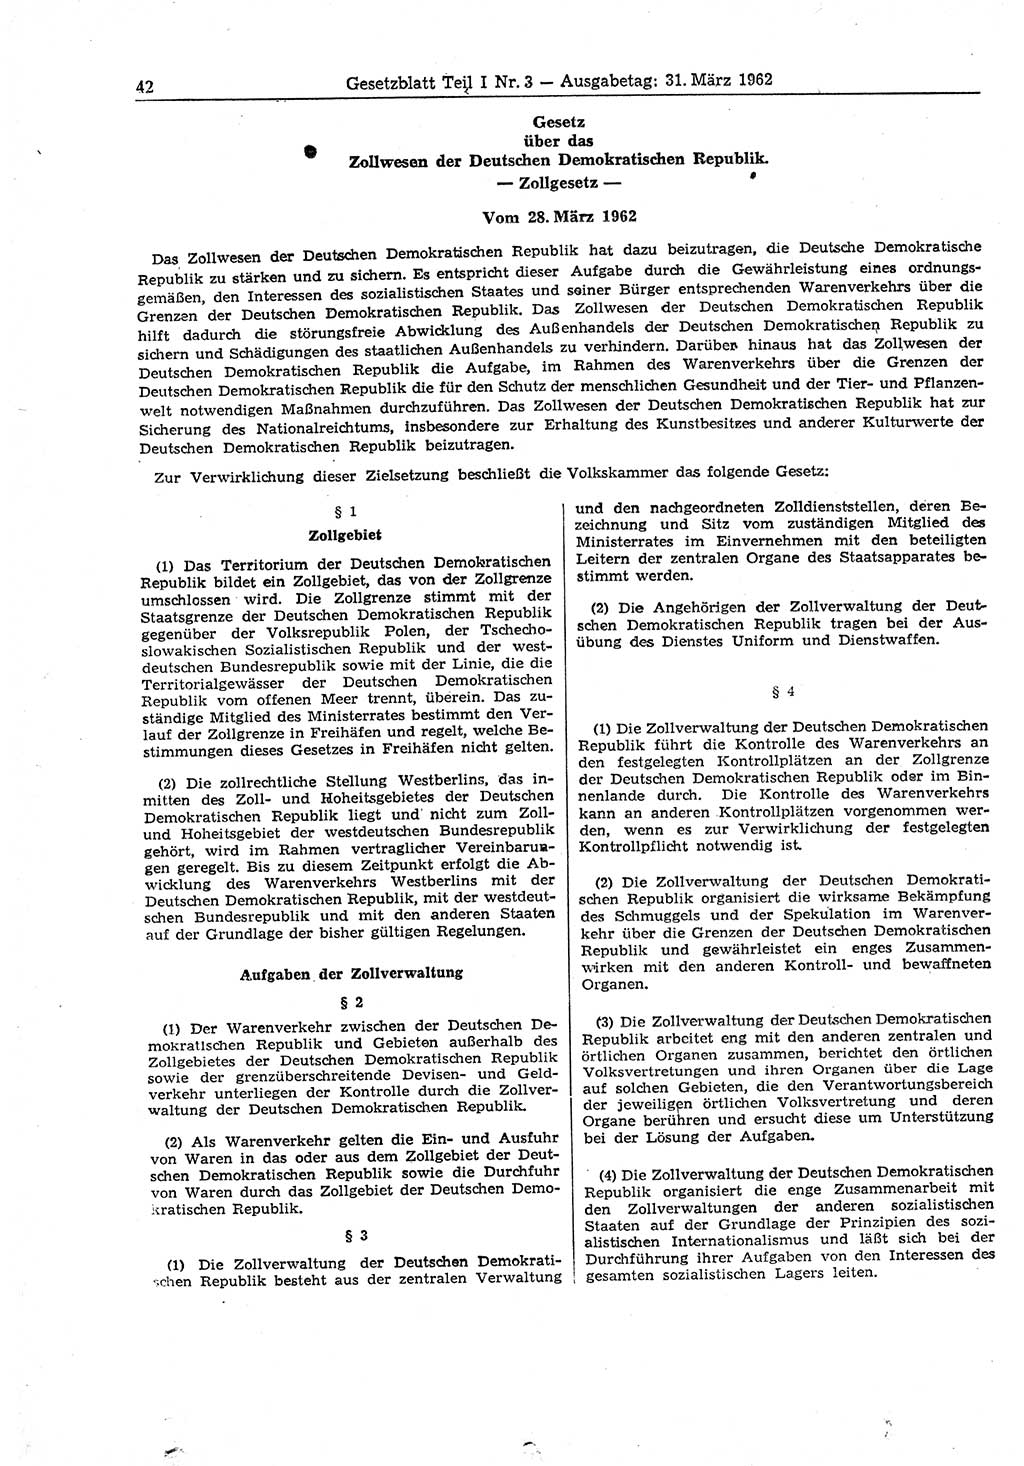 Gesetzblatt (GBl.) der Deutschen Demokratischen Republik (DDR) Teil Ⅰ 1962, Seite 42 (GBl. DDR Ⅰ 1962, S. 42)